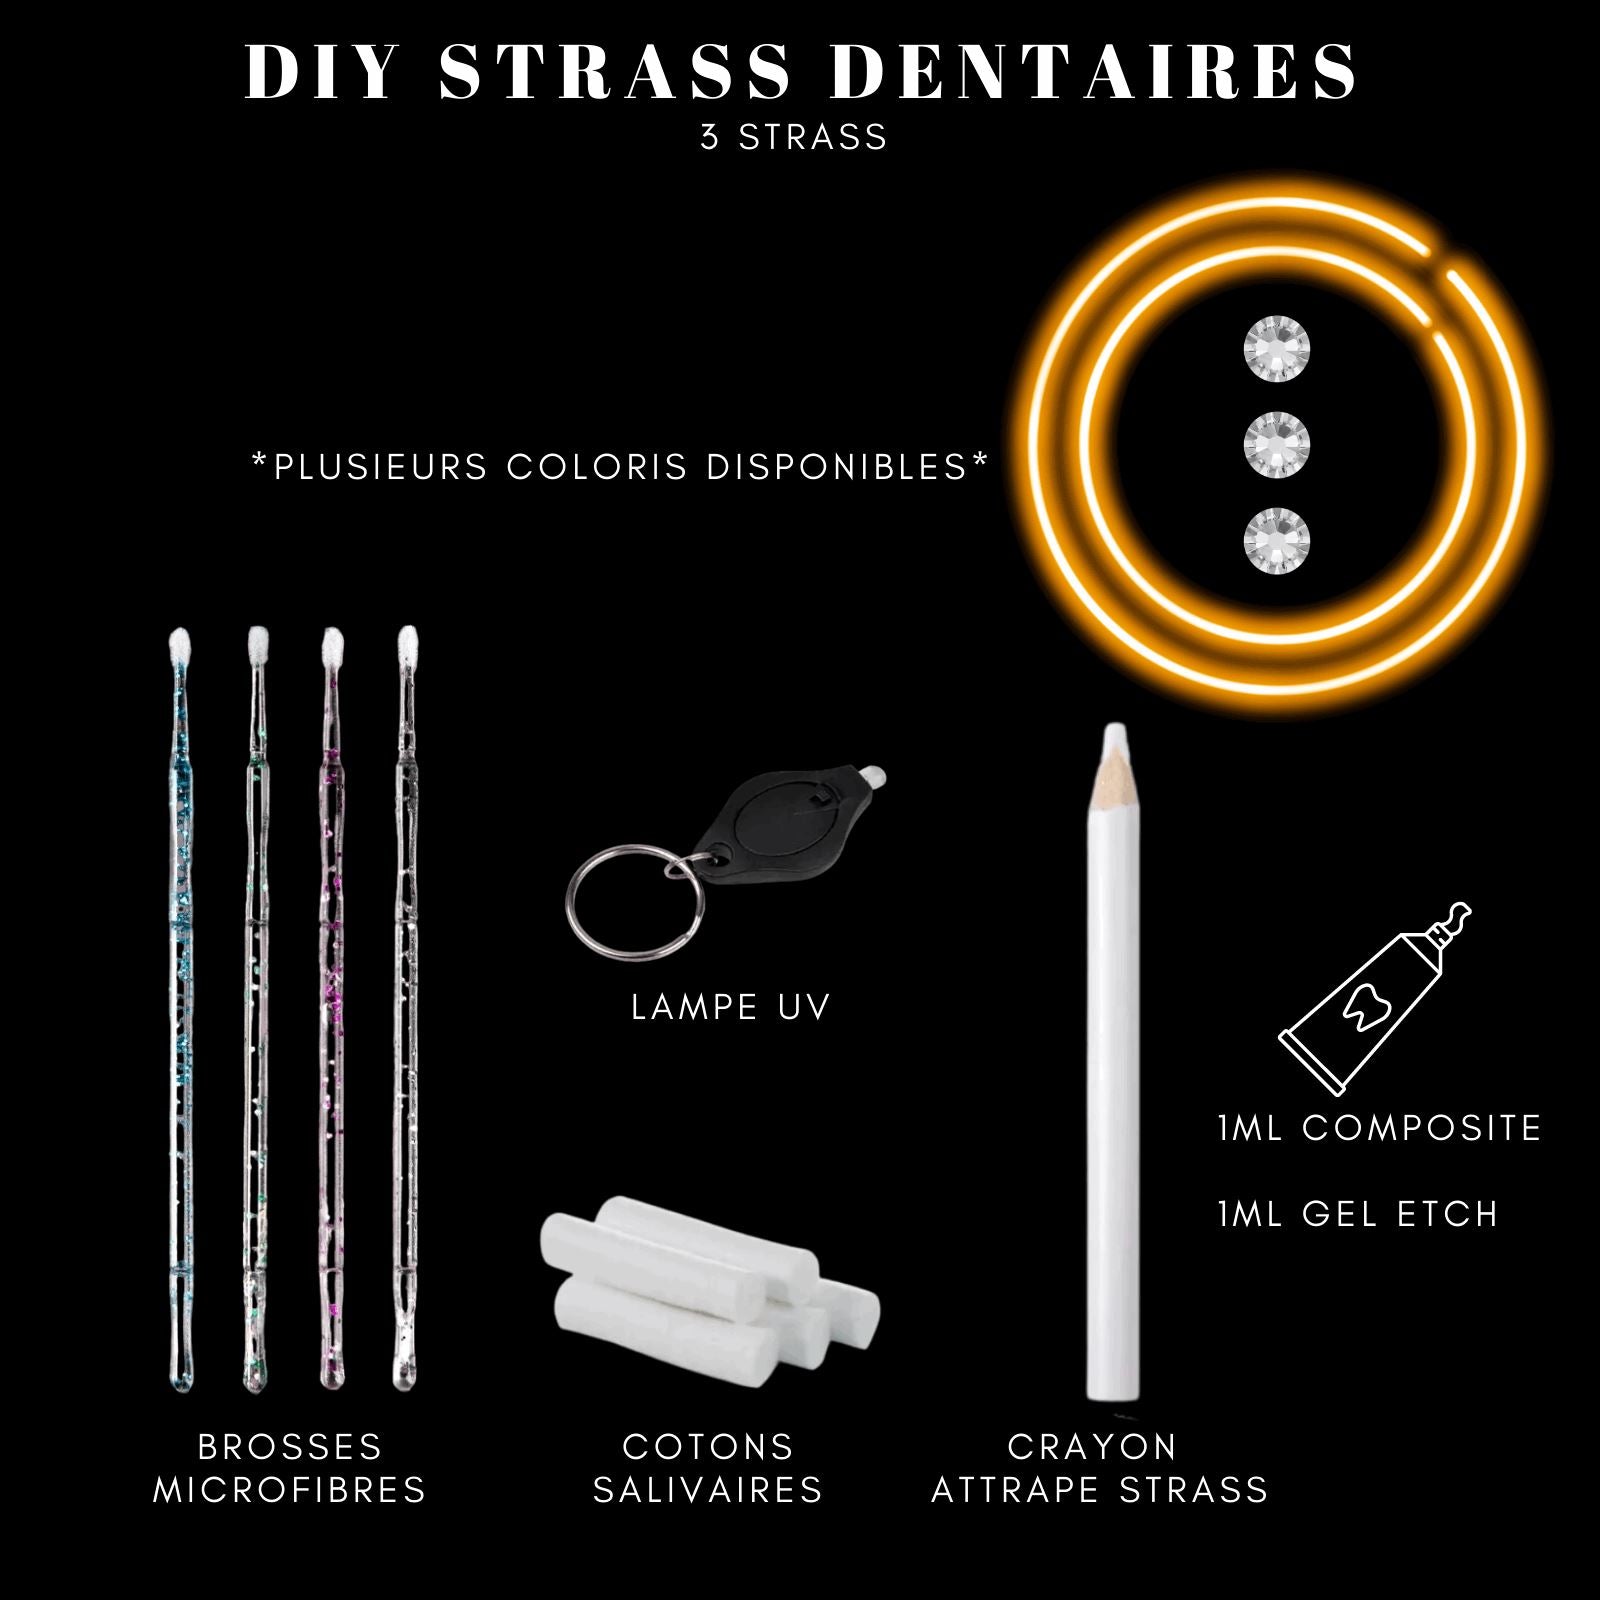 DIY Tooth Gems Kit 3 STRASS - Ton Kit de Pose de strass dentaire Homemade